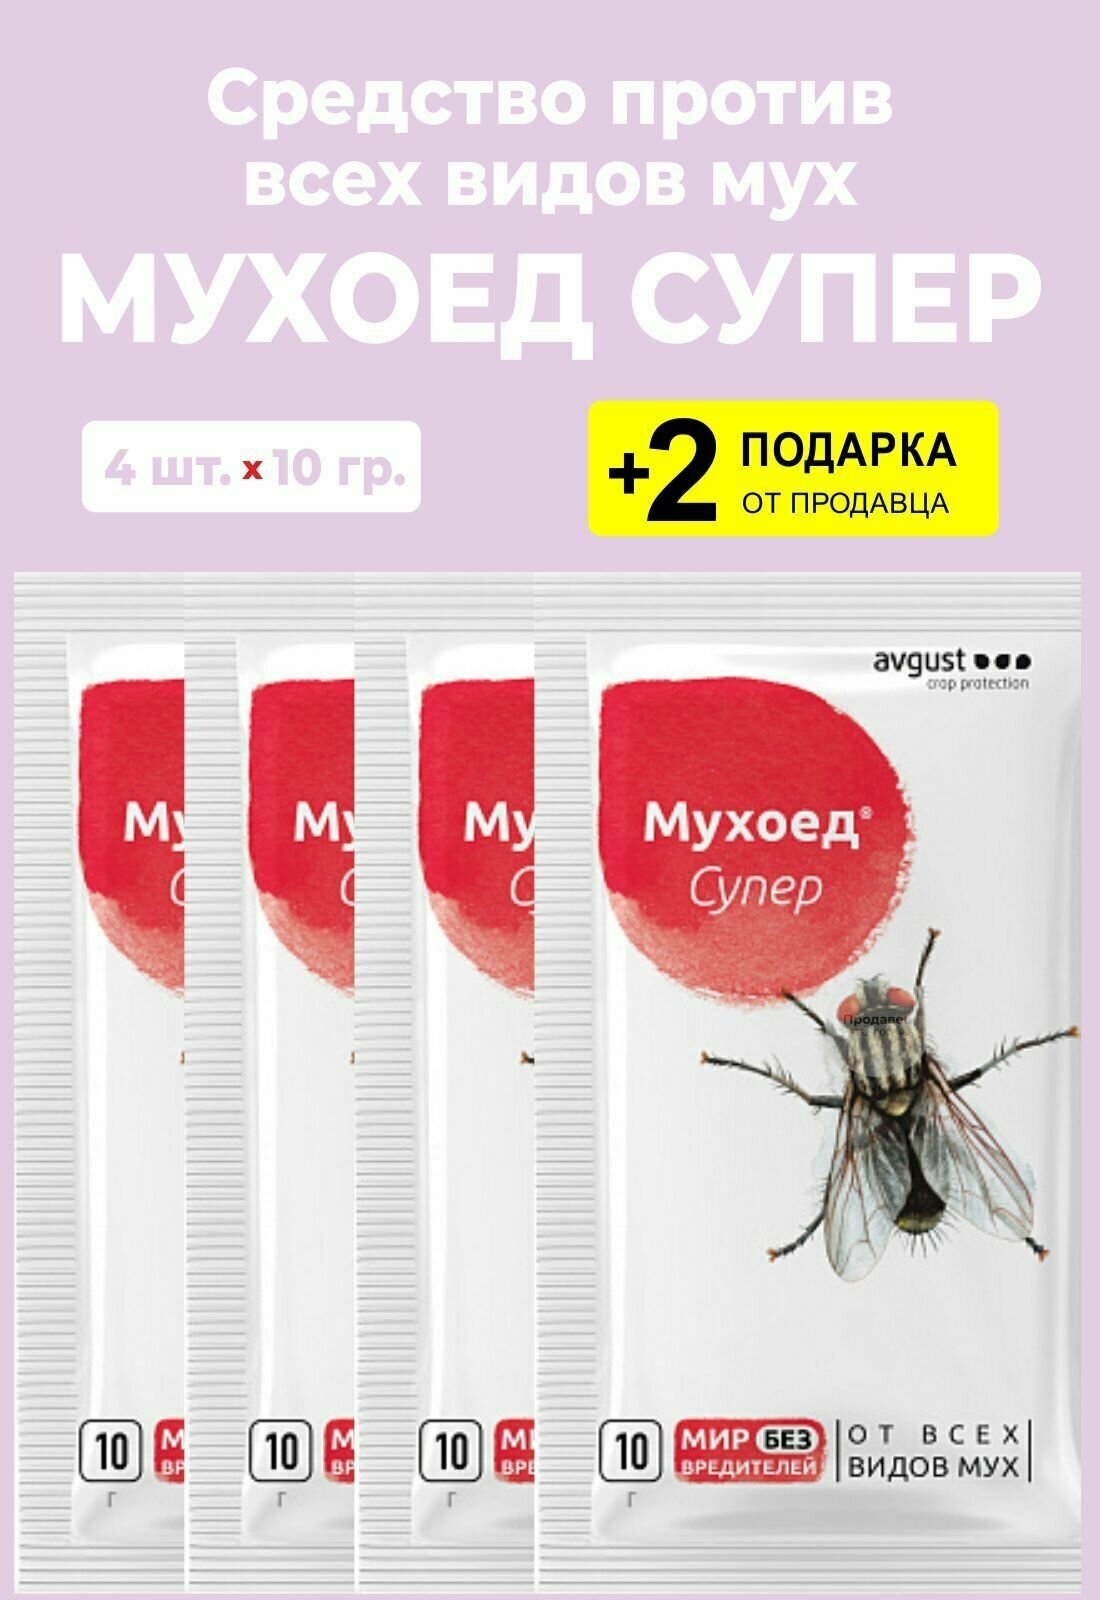 Средство для борьбы от всех видов мух "Мухоед Супер", 10 гр., 4 упаковки + 2 Подарка